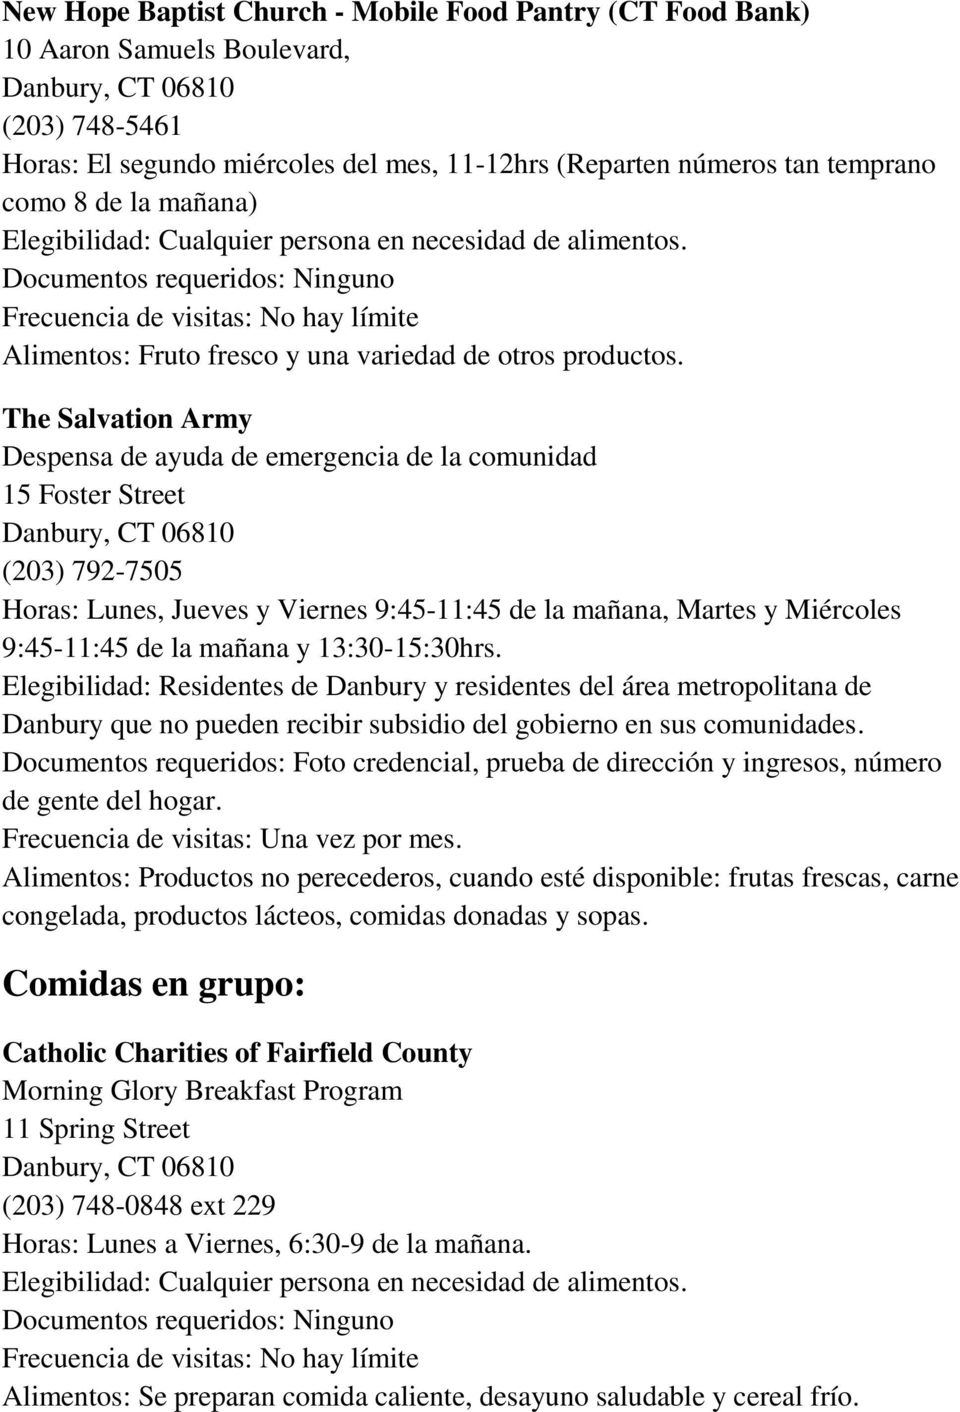 The Salvation Army Despensa de ayuda de emergencia de la comunidad 15 Foster Street (203) 792-7505 Horas: Lunes, Jueves y Viernes 9:45-11:45 de la mañana, Martes y Miércoles 9:45-11:45 de la mañana y